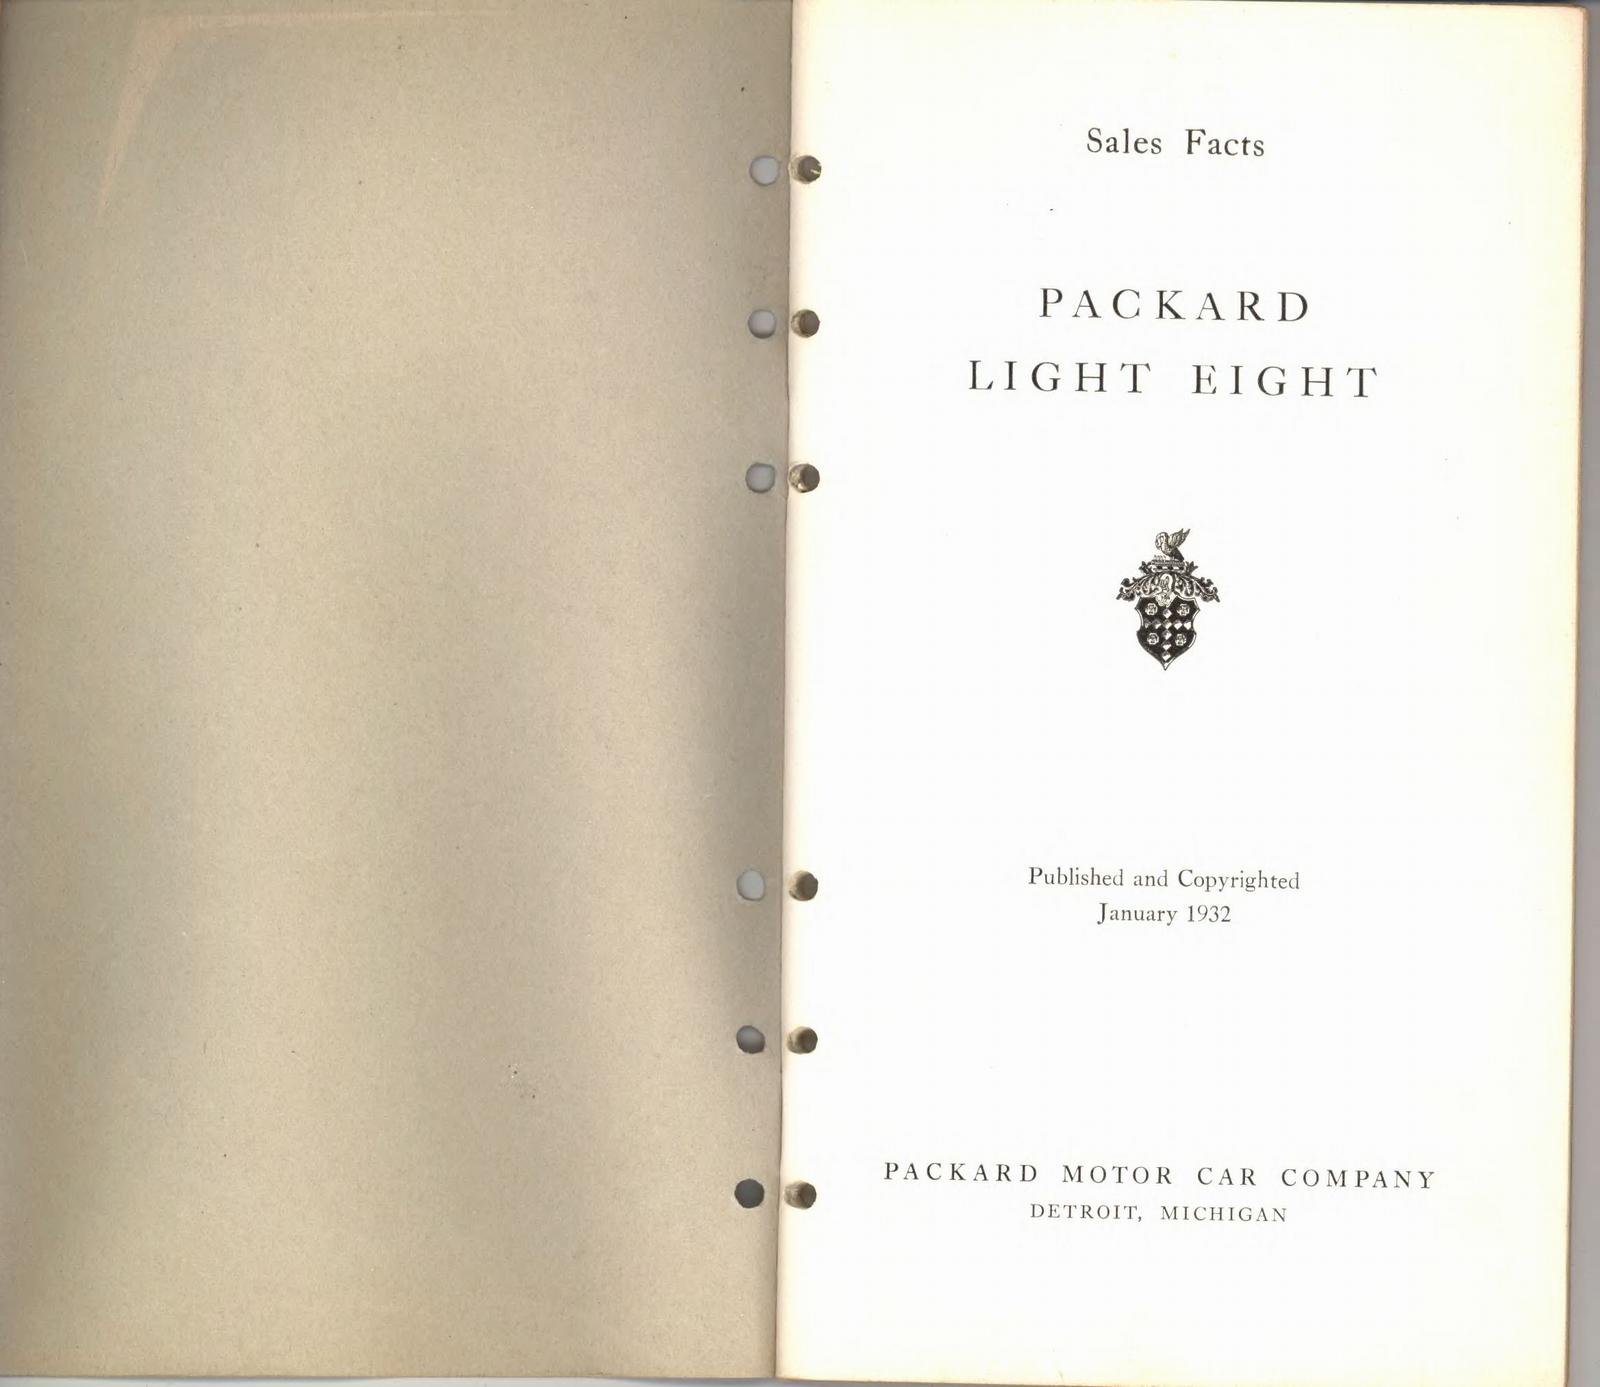 n_1932 Packard Light Eight Facts Book-00a-01.jpg